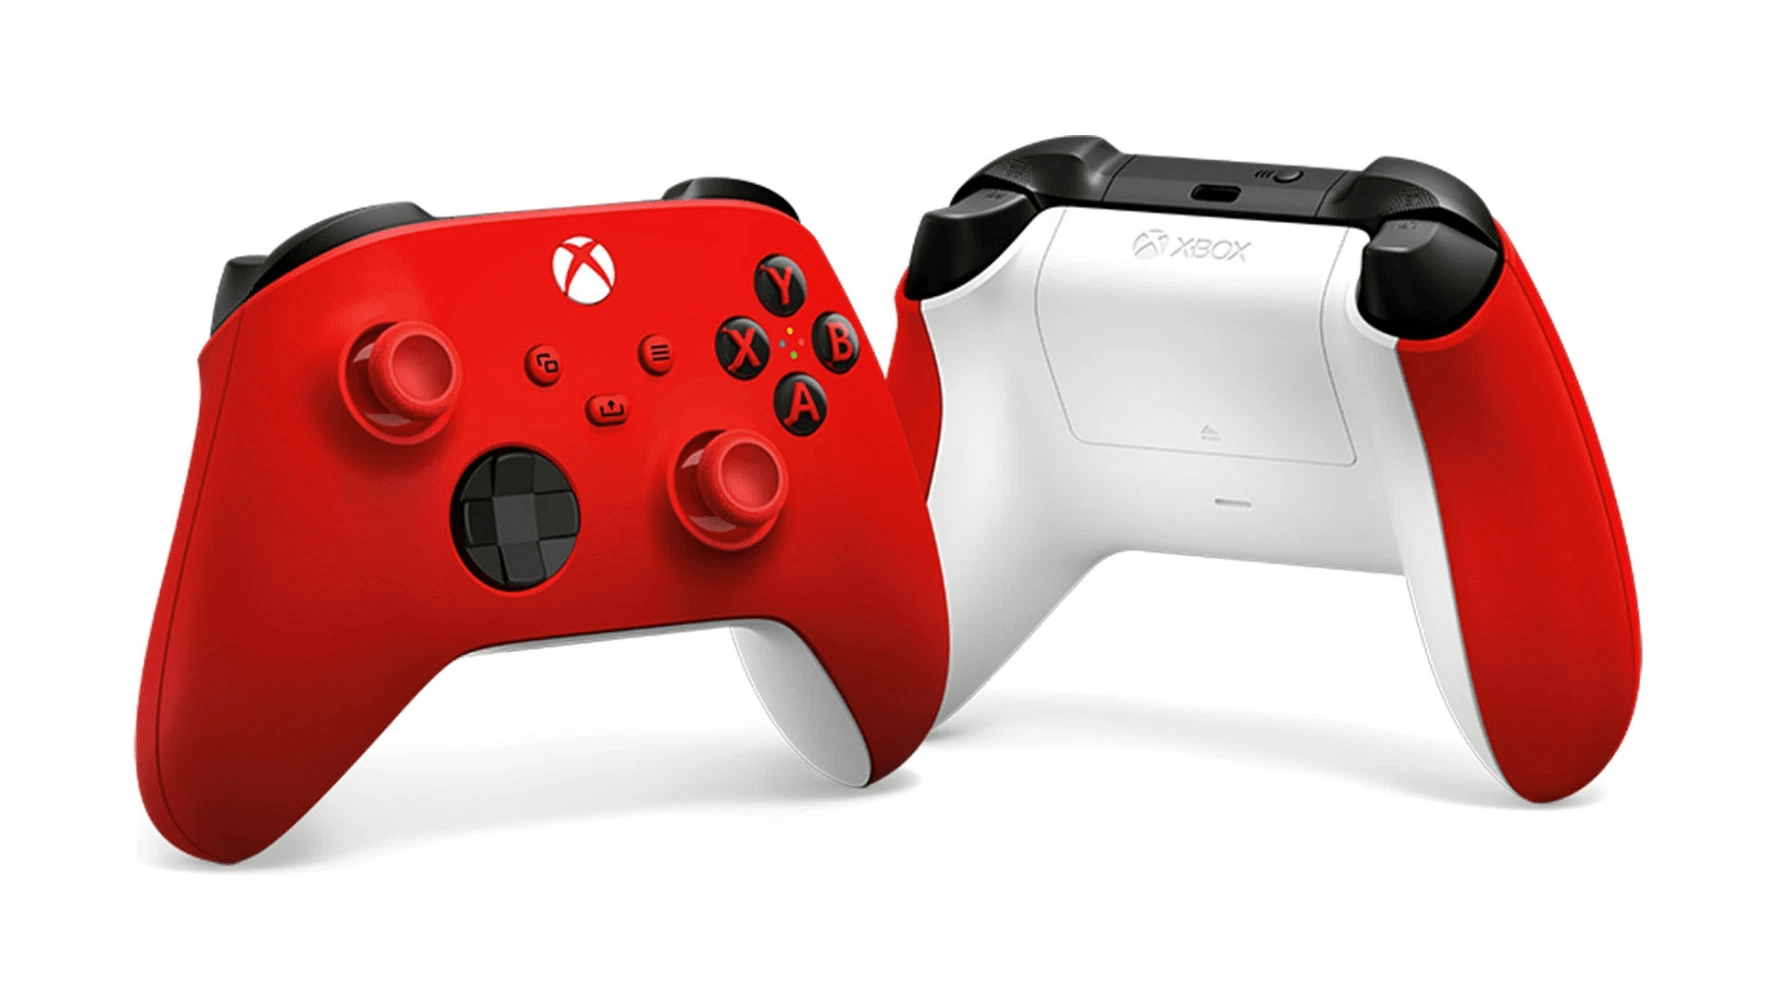 Xboxワイヤレスコントローラーパルスレッド 国内では2月23日発売へ Wpteq